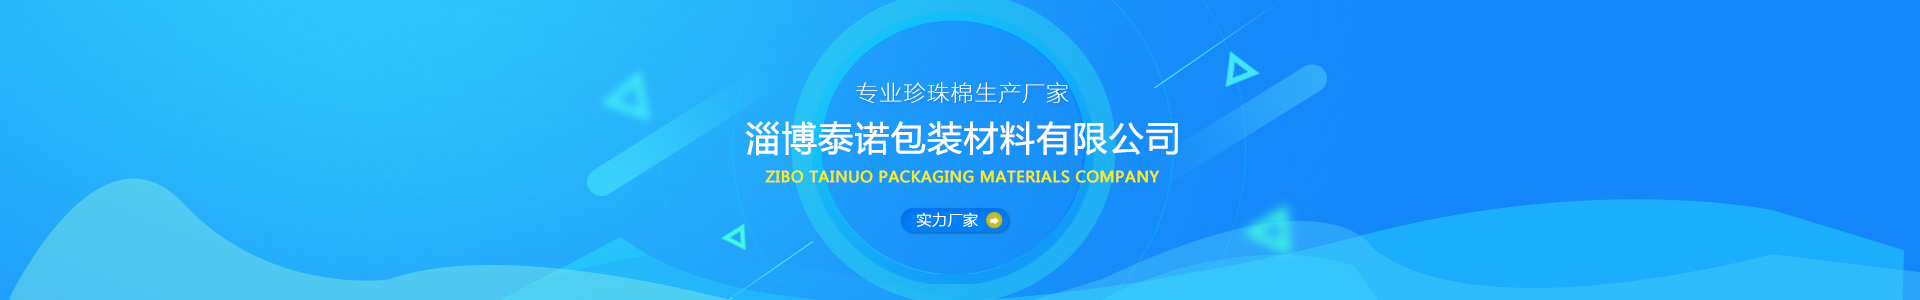 淄博泰諾包裝材料有限公司